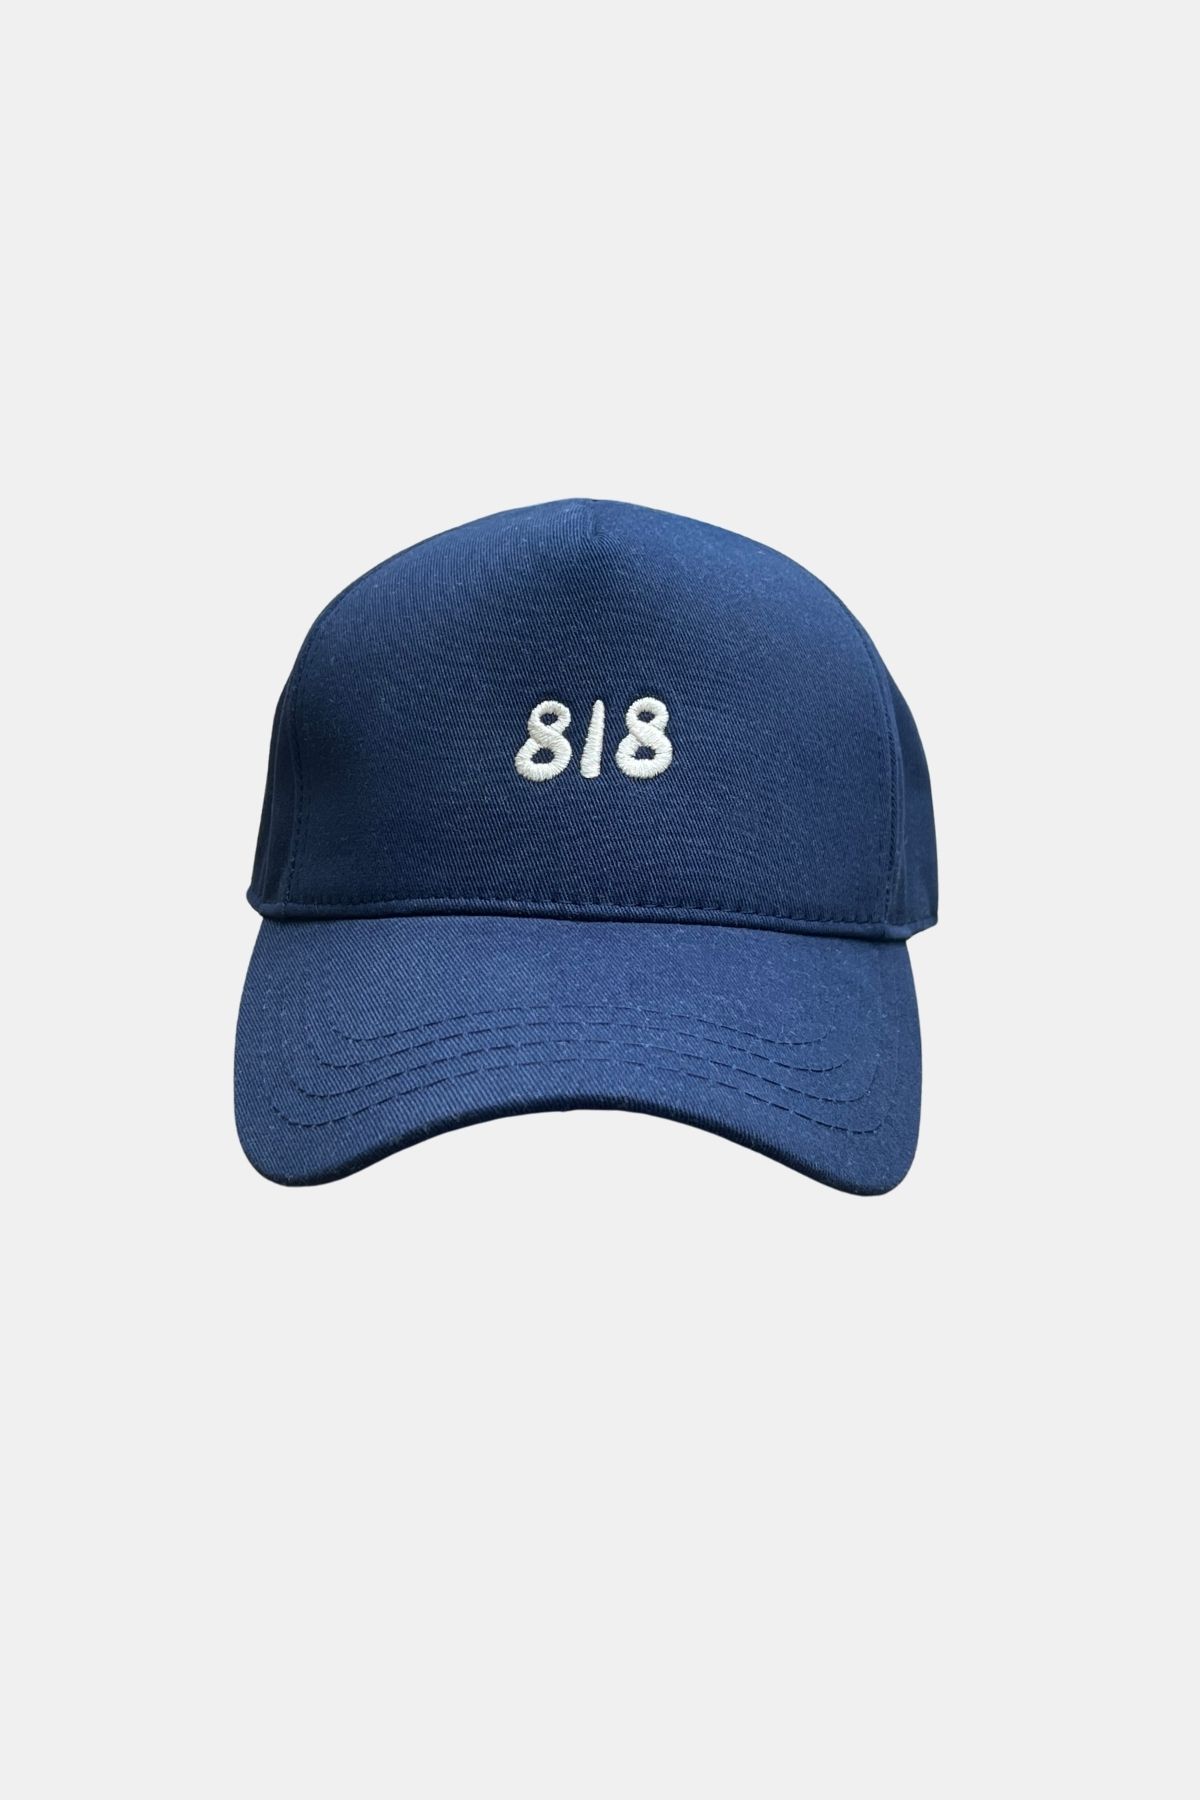 Charlie Chapka Unisex 818 Nakışlı Ayarlanabilir Lacivert Şapka